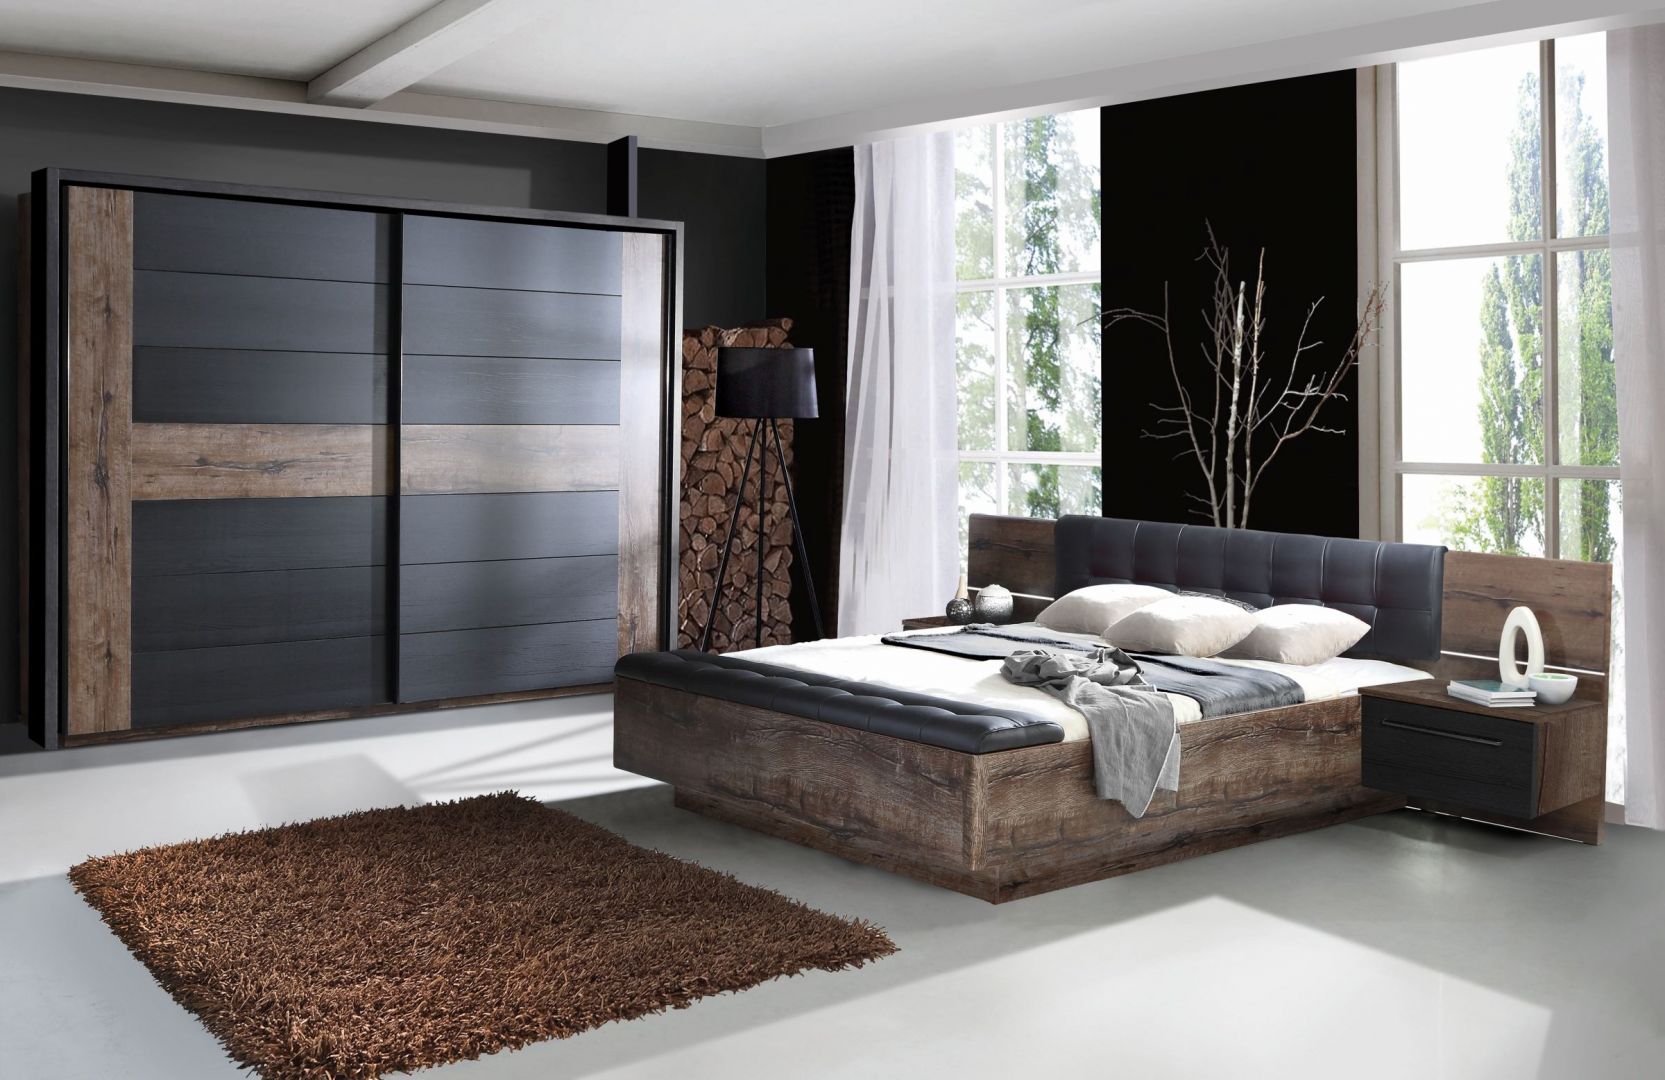 Sypialnia Recover to stylowe meble w modnym odcieniu szarości oraz dekorze drewna. Fot. Salony Agata